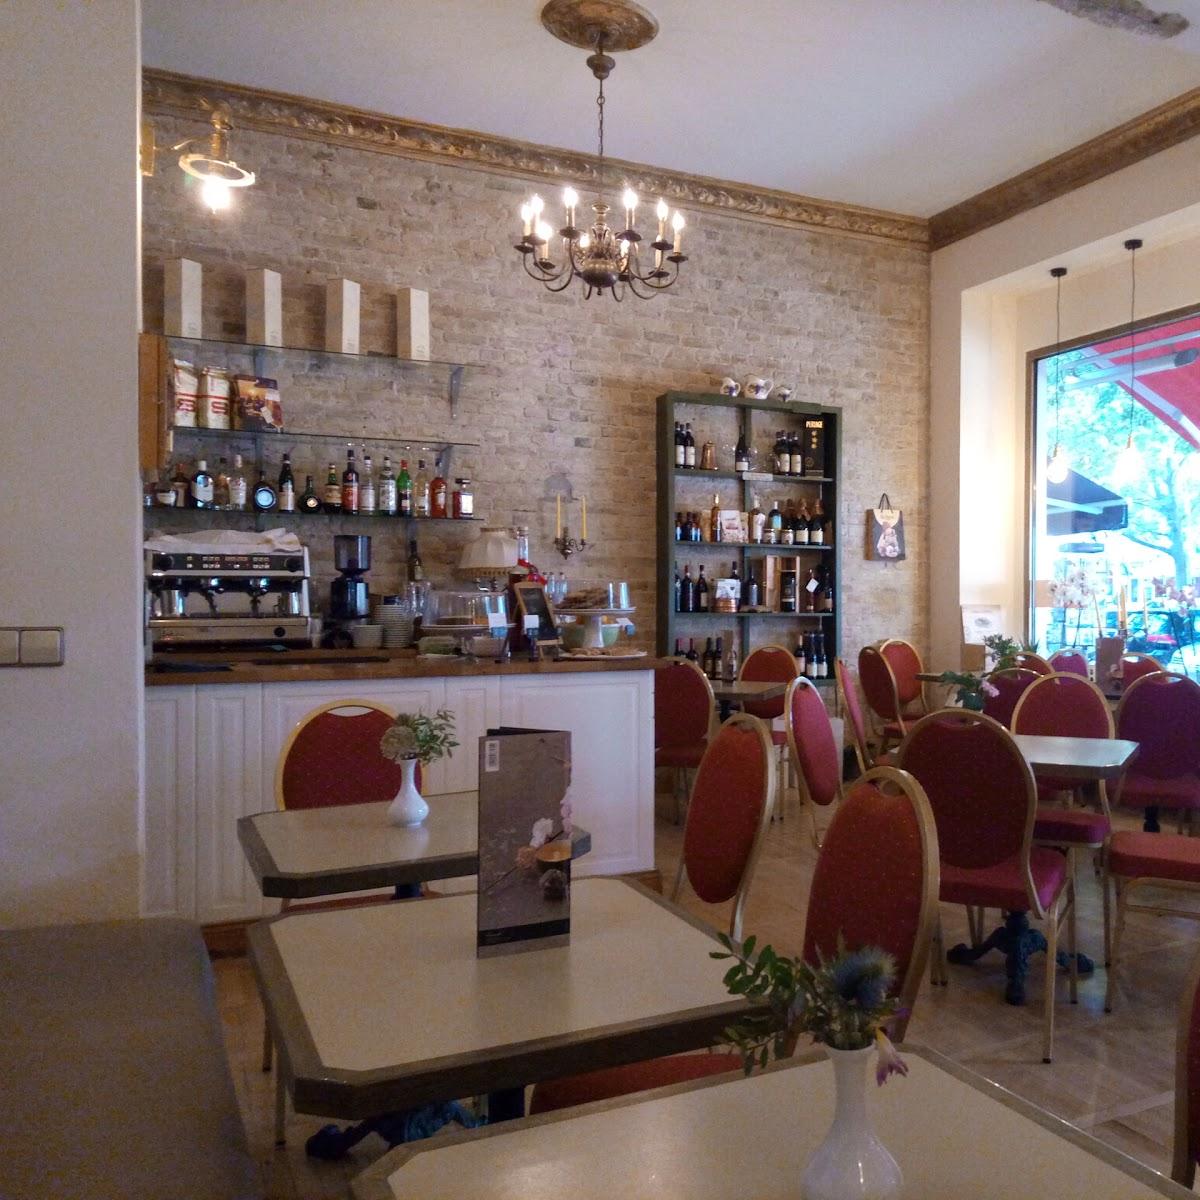 Restaurant "Italienisches Cafe & Restaurant Ludwig con brio" in Berlin